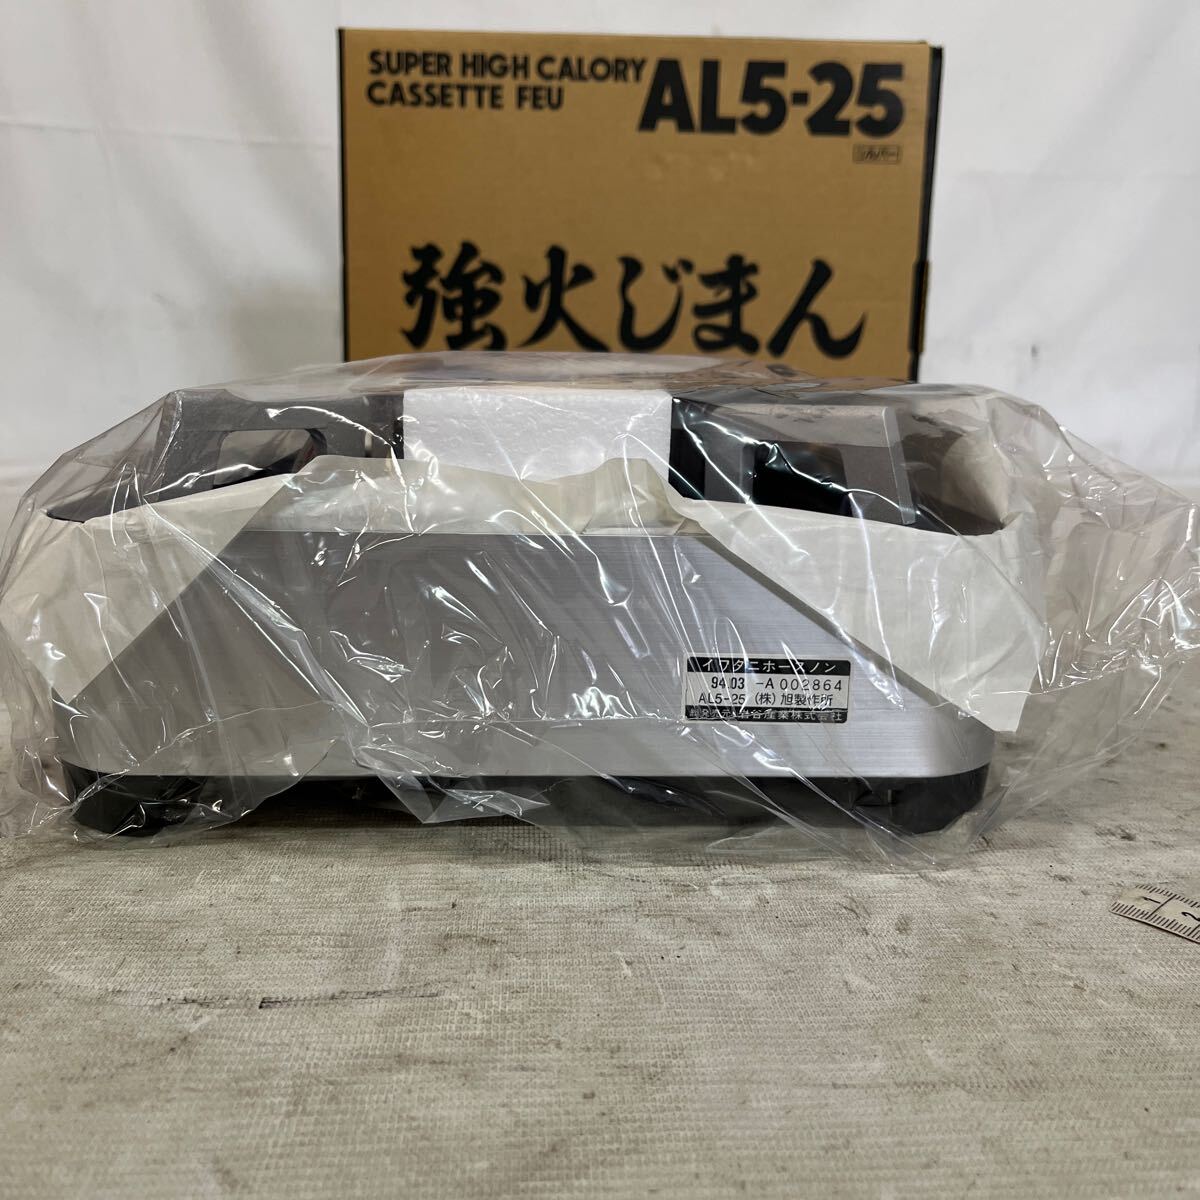 【ジャンク品】Iwatani カセットフー。AL5-25。未開封品。箱サイズ約81センチ_画像6